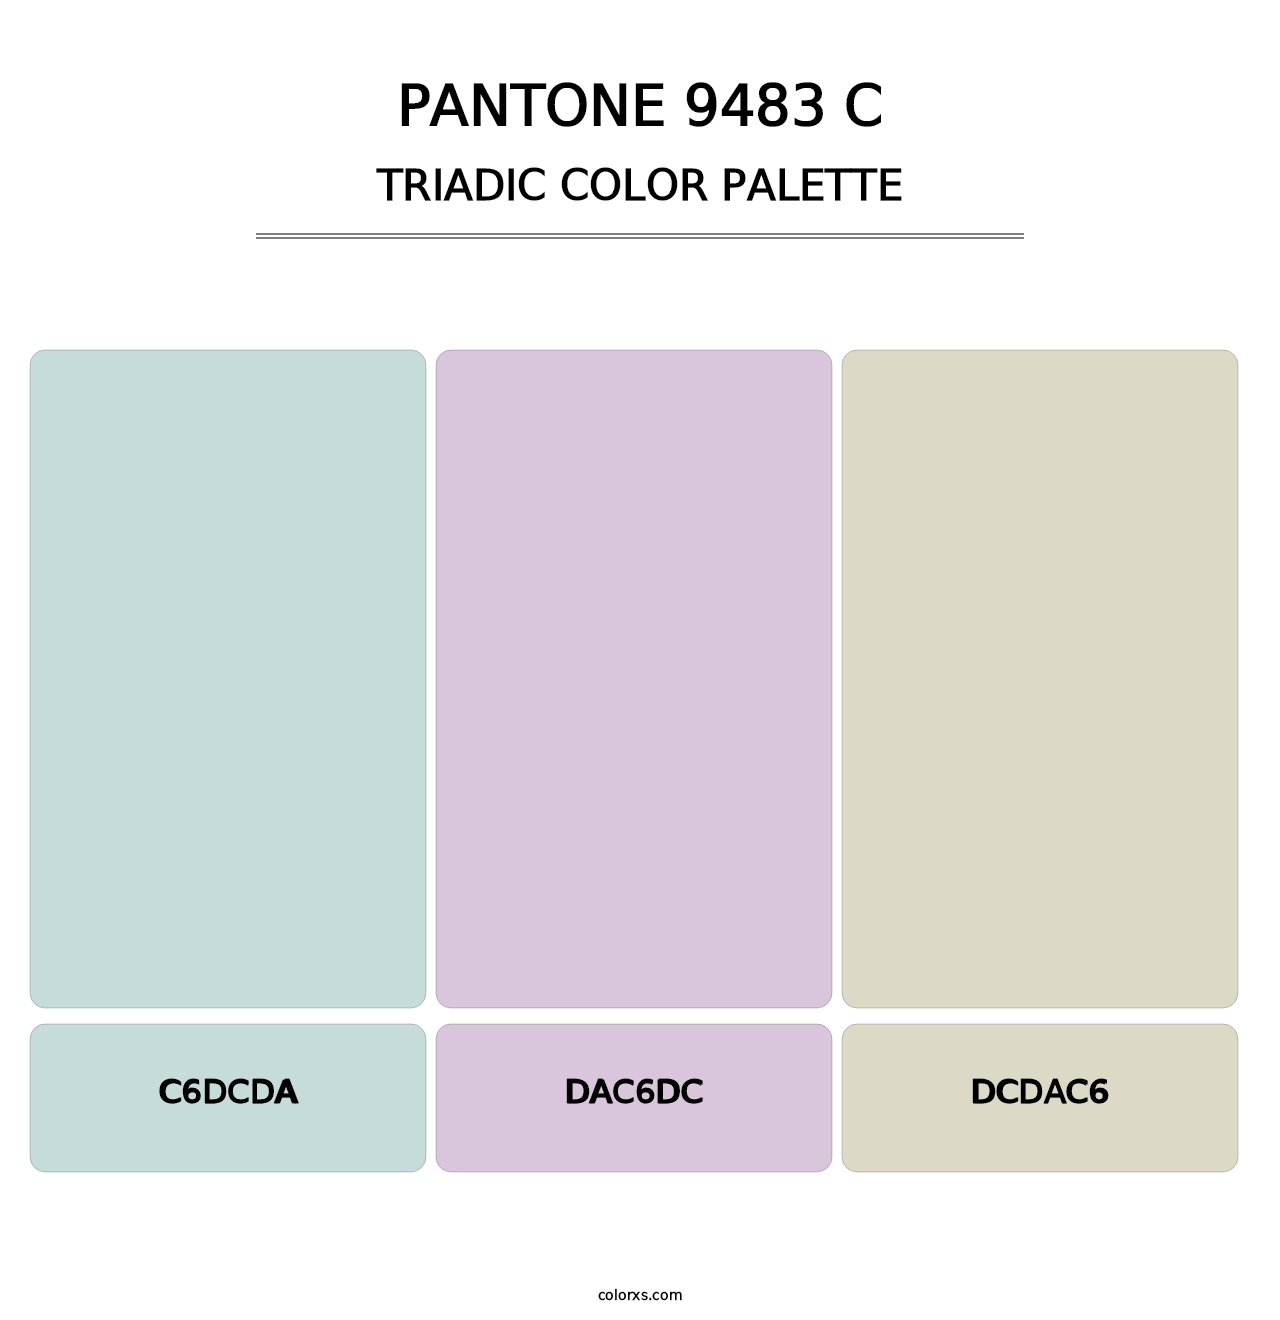 PANTONE 9483 C - Triadic Color Palette